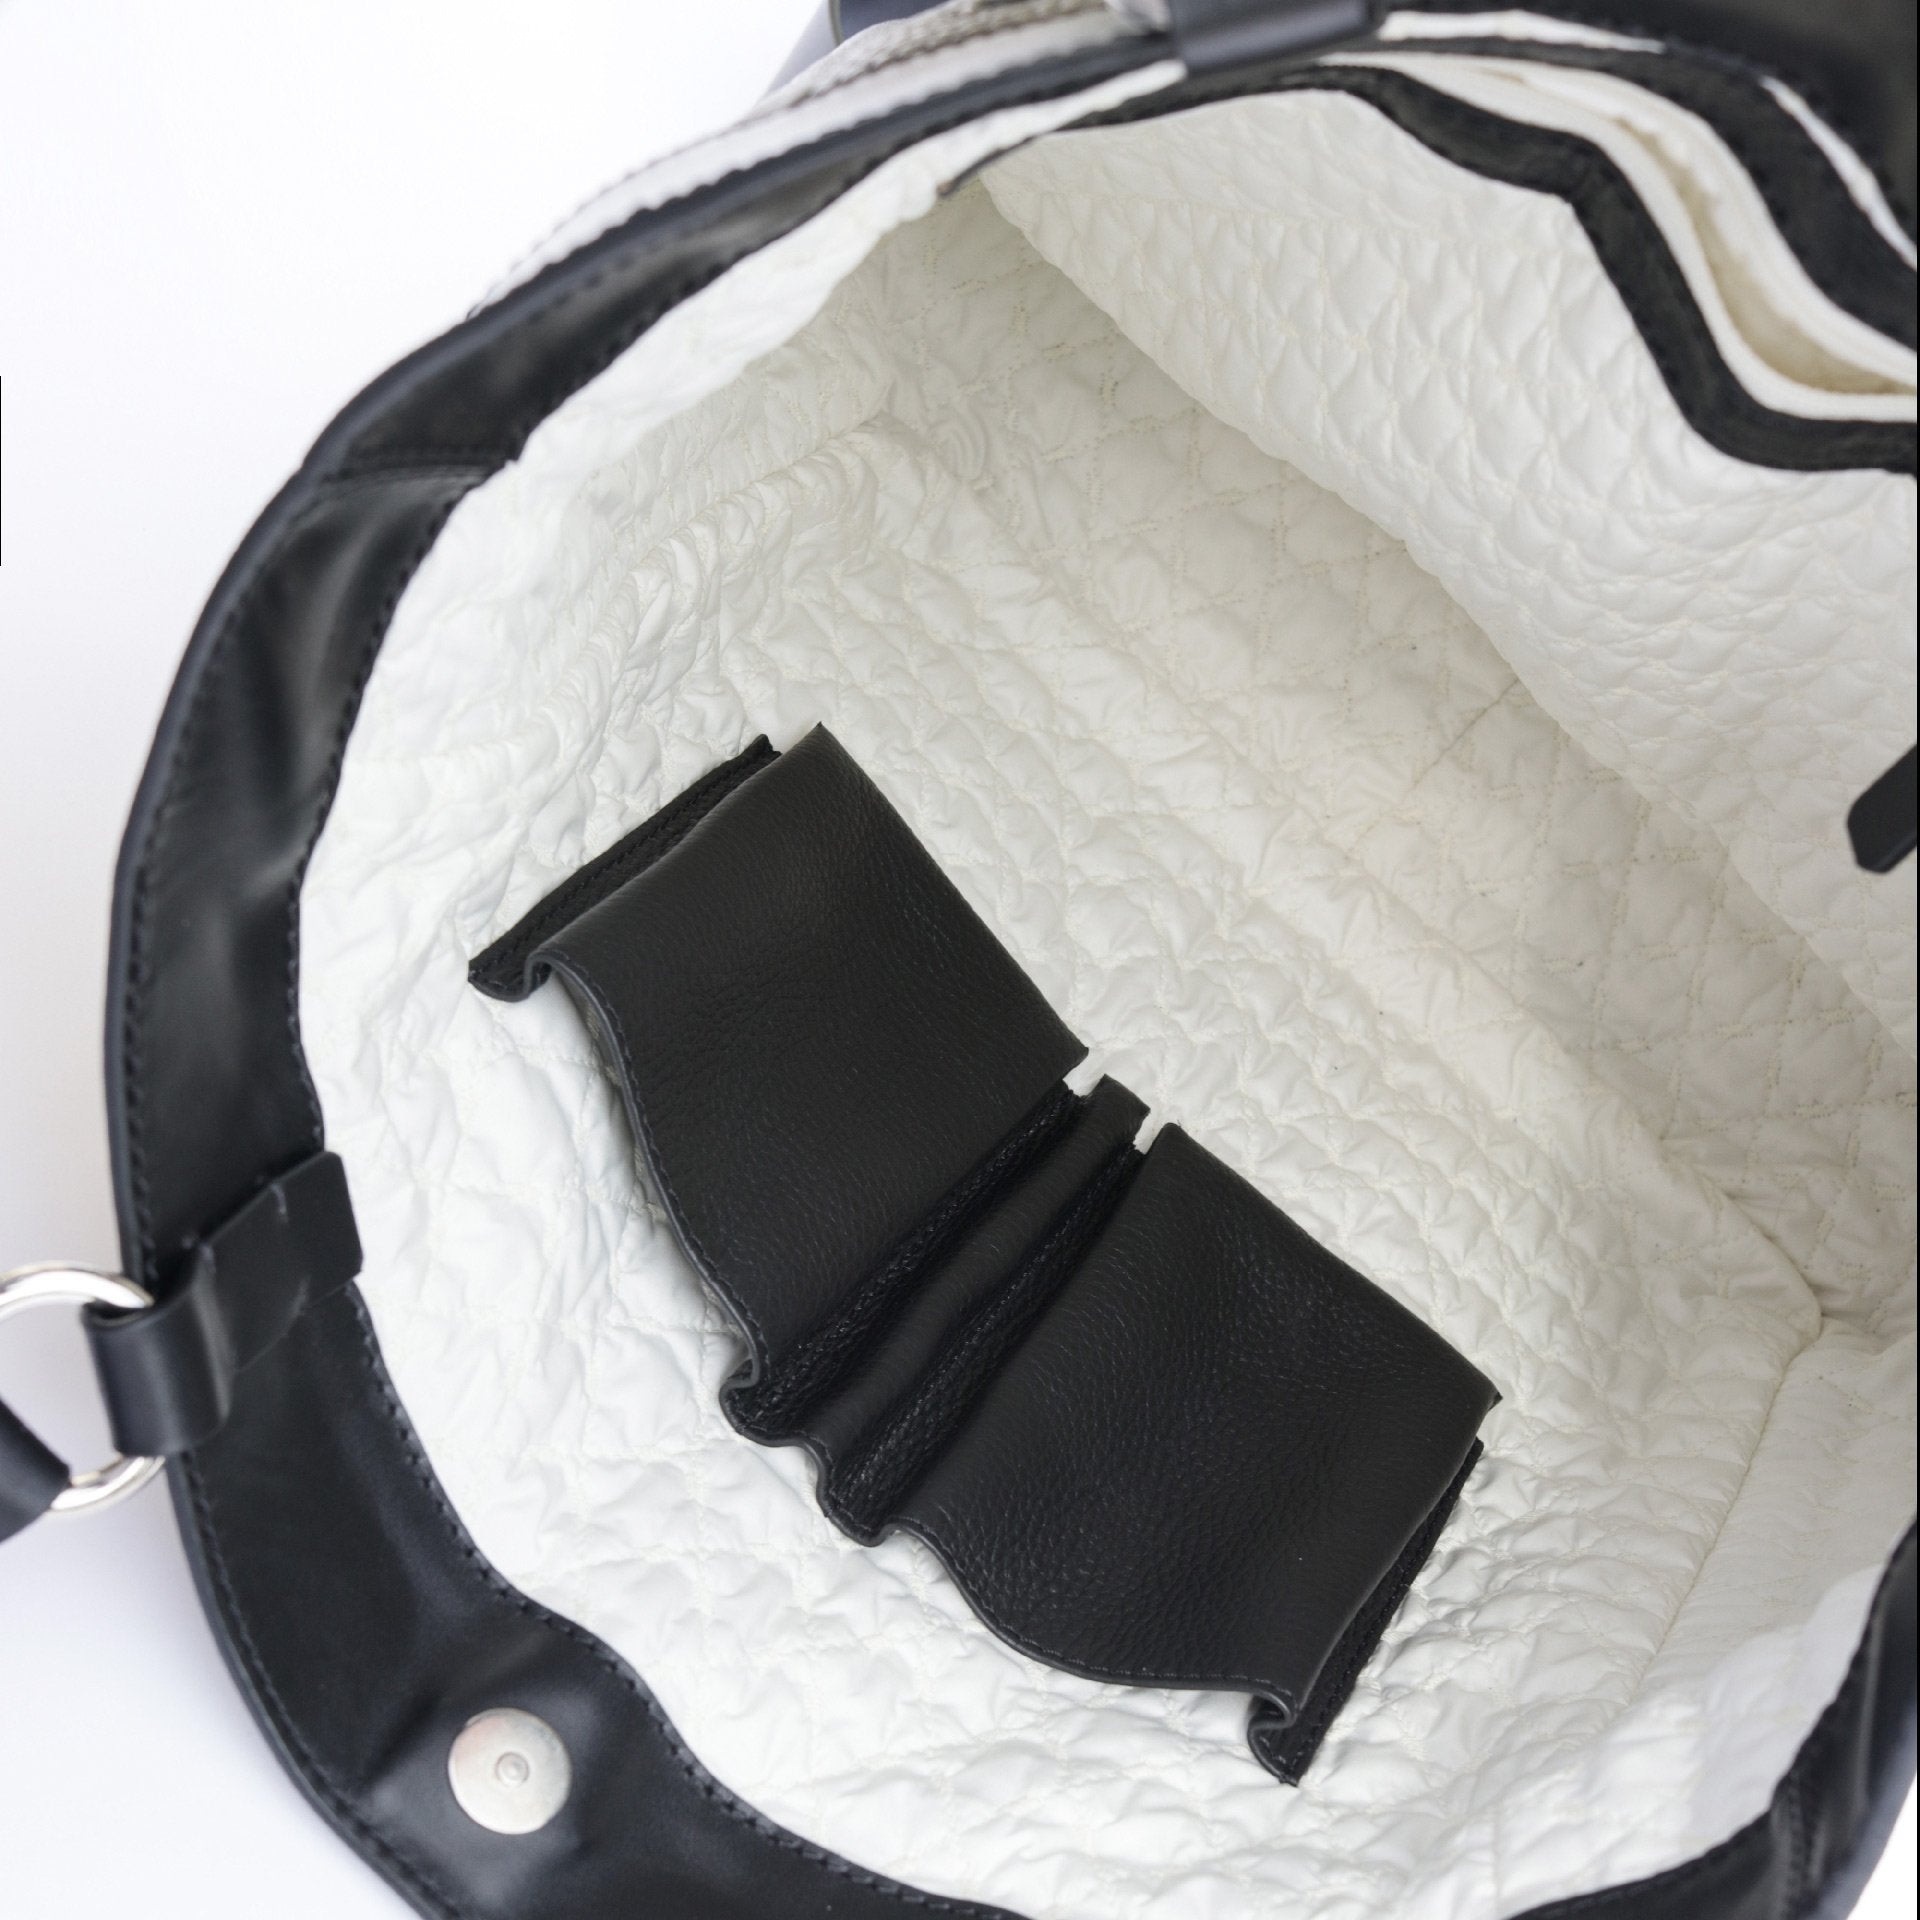 Buy Sandalwali Helena Leather Sling Bag Online